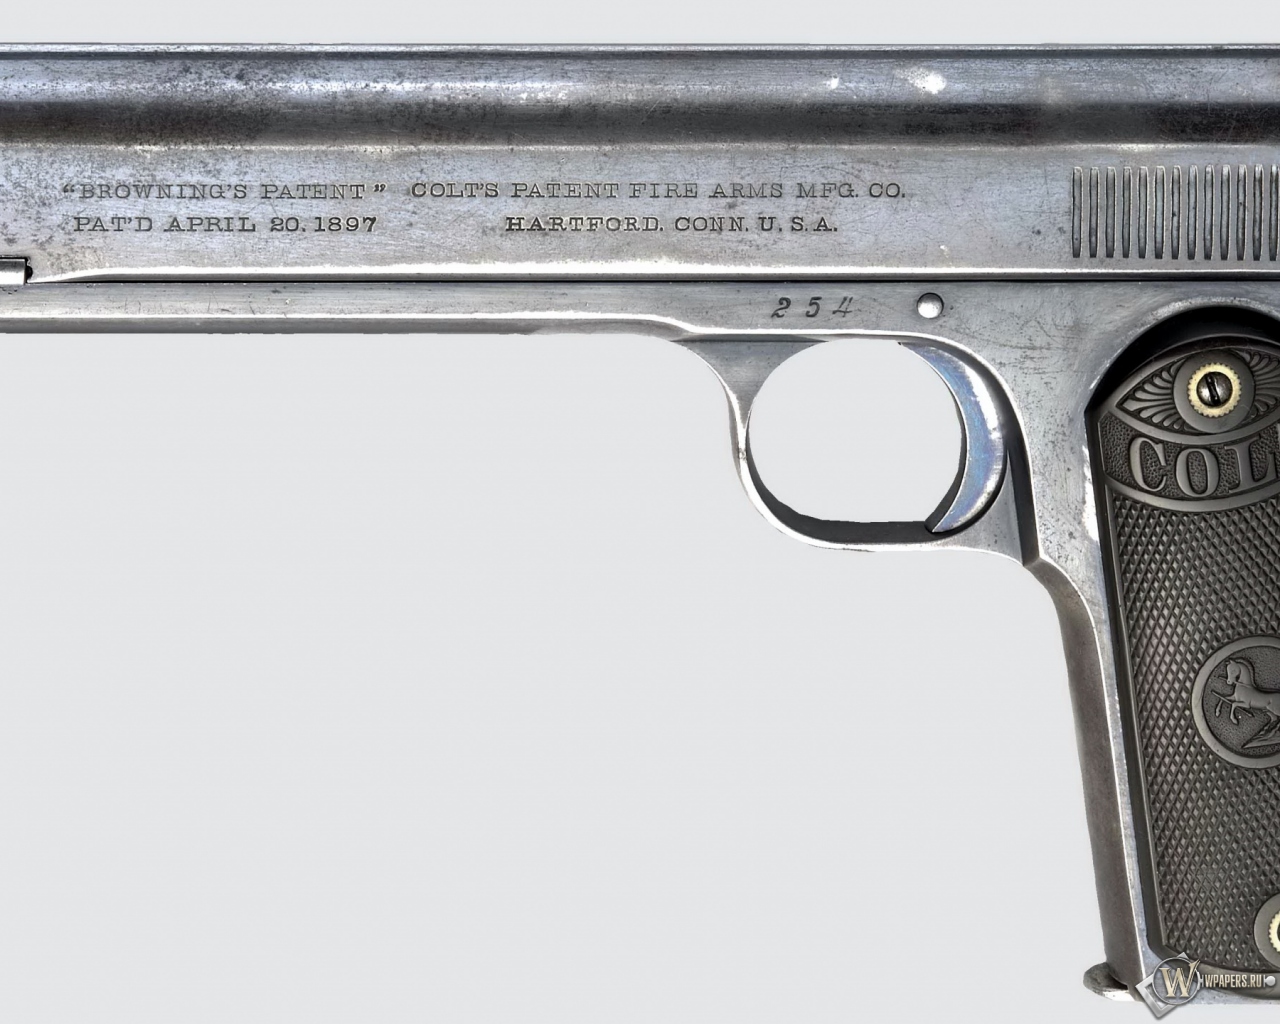 Colt M1900 automatic pistol 1280x1024